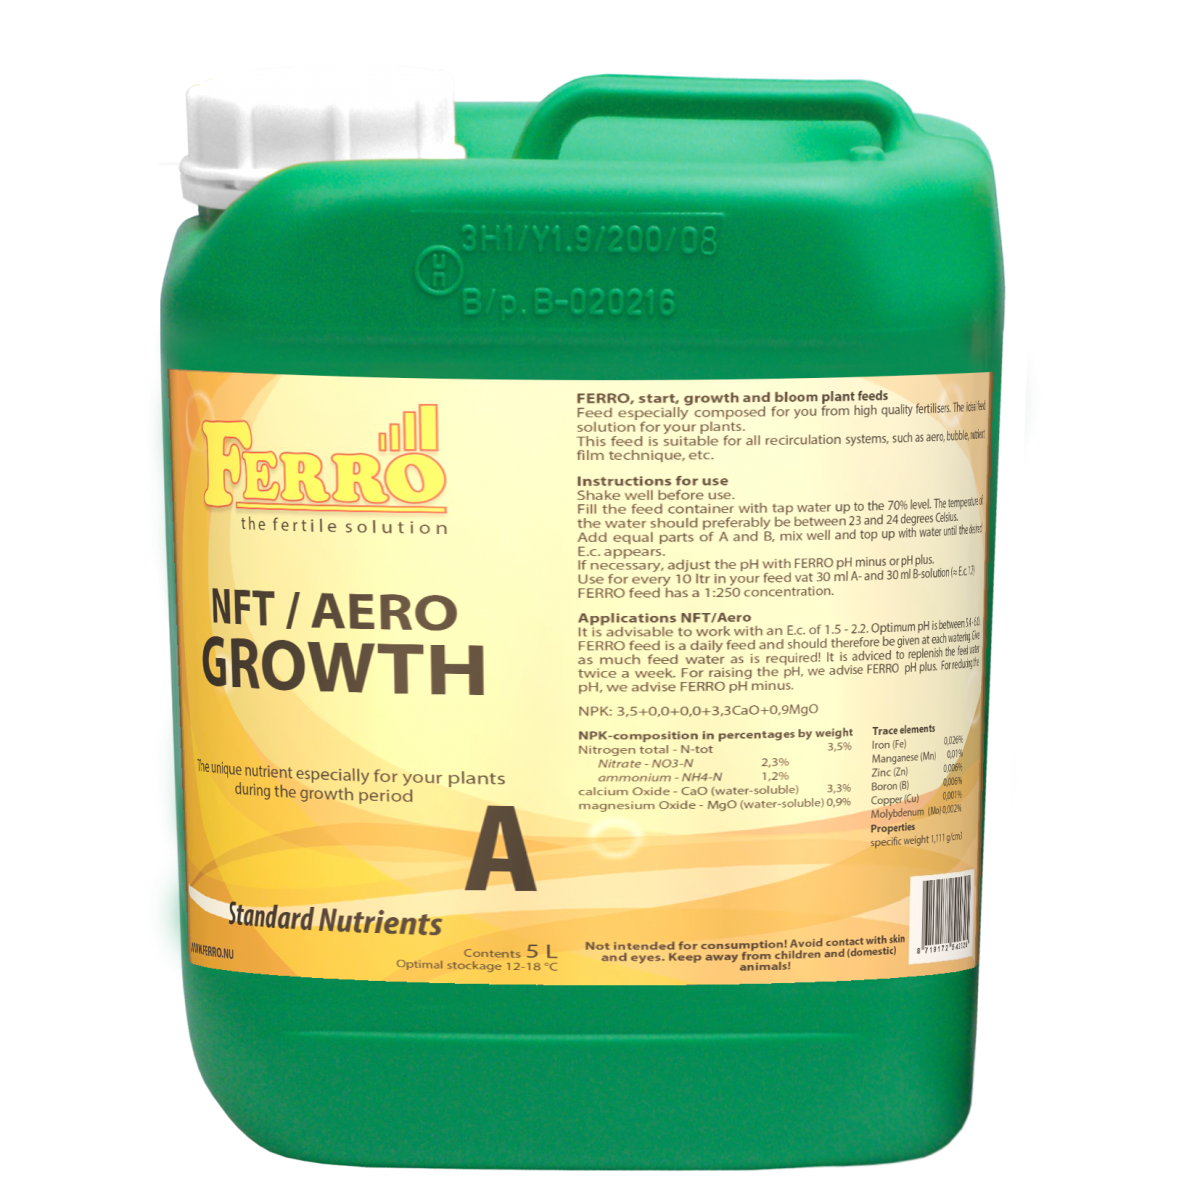 Growth Nutrient A & B Set Ferro NFT / AERO